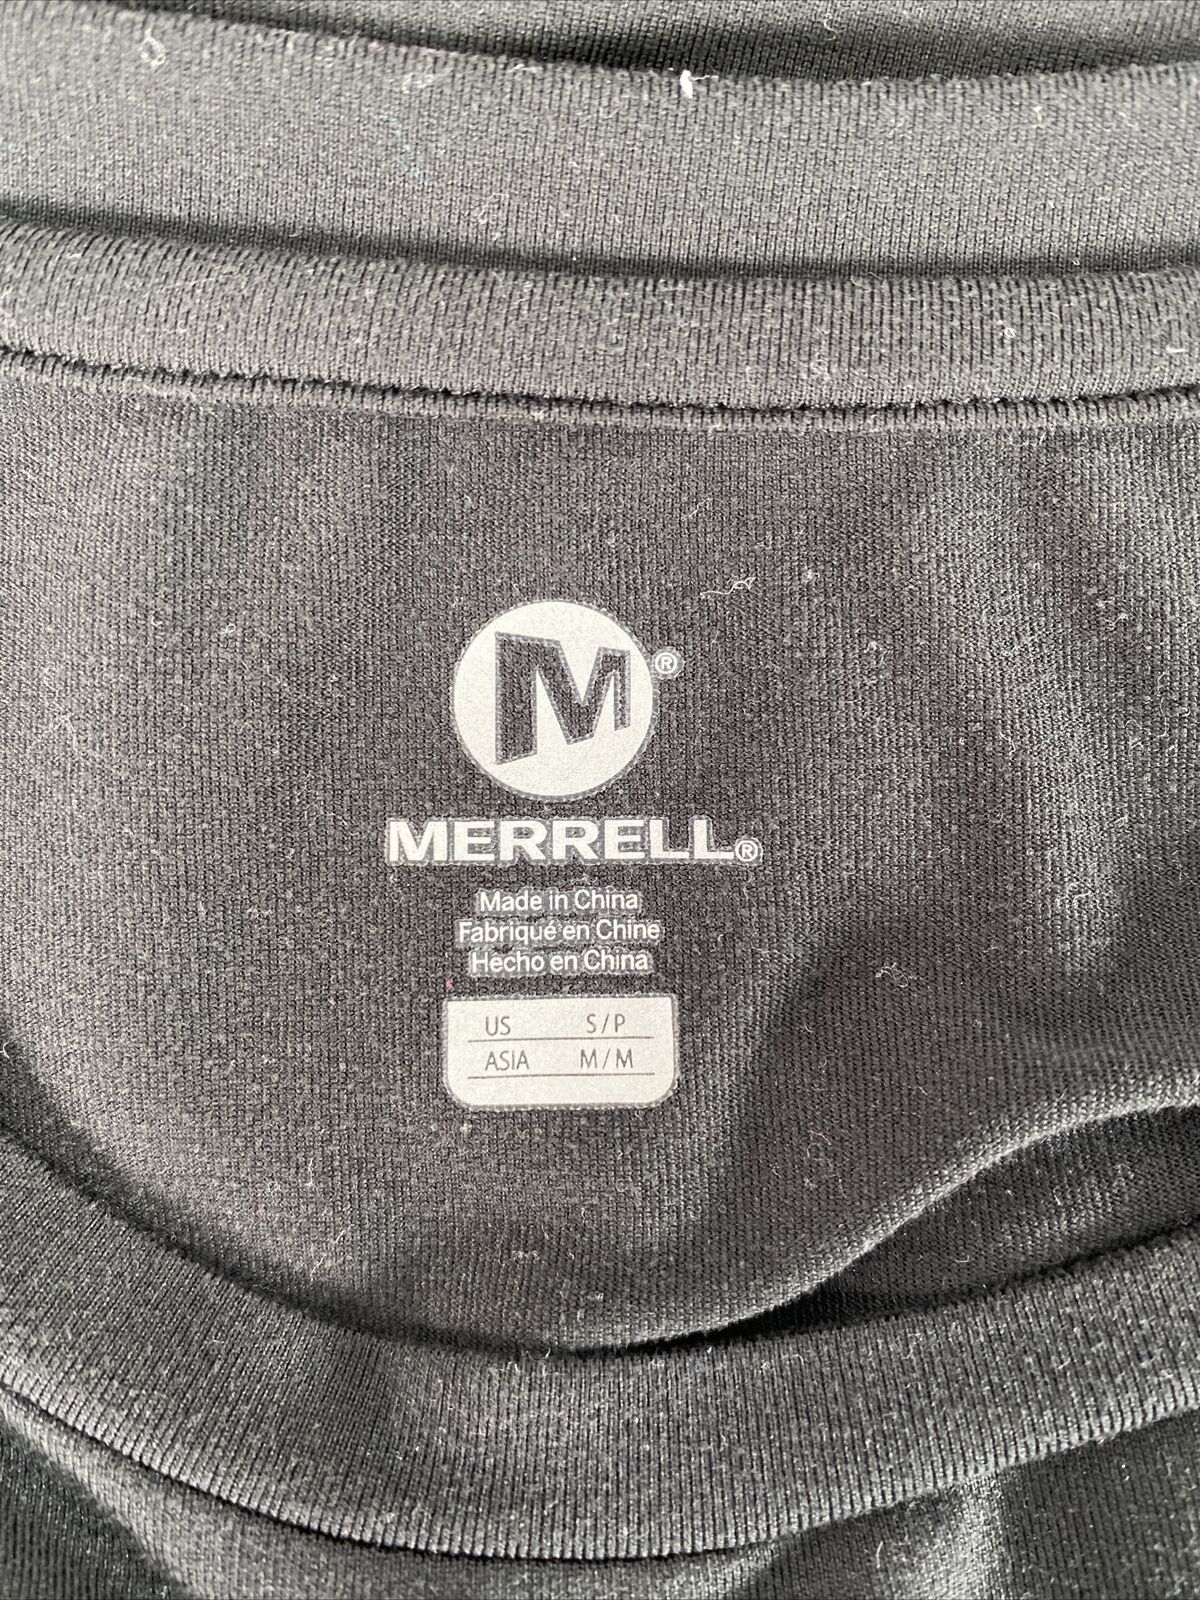 Merrell Women's Black Short Sleeve Polyester Crewneck Athletic Shirt Sz S